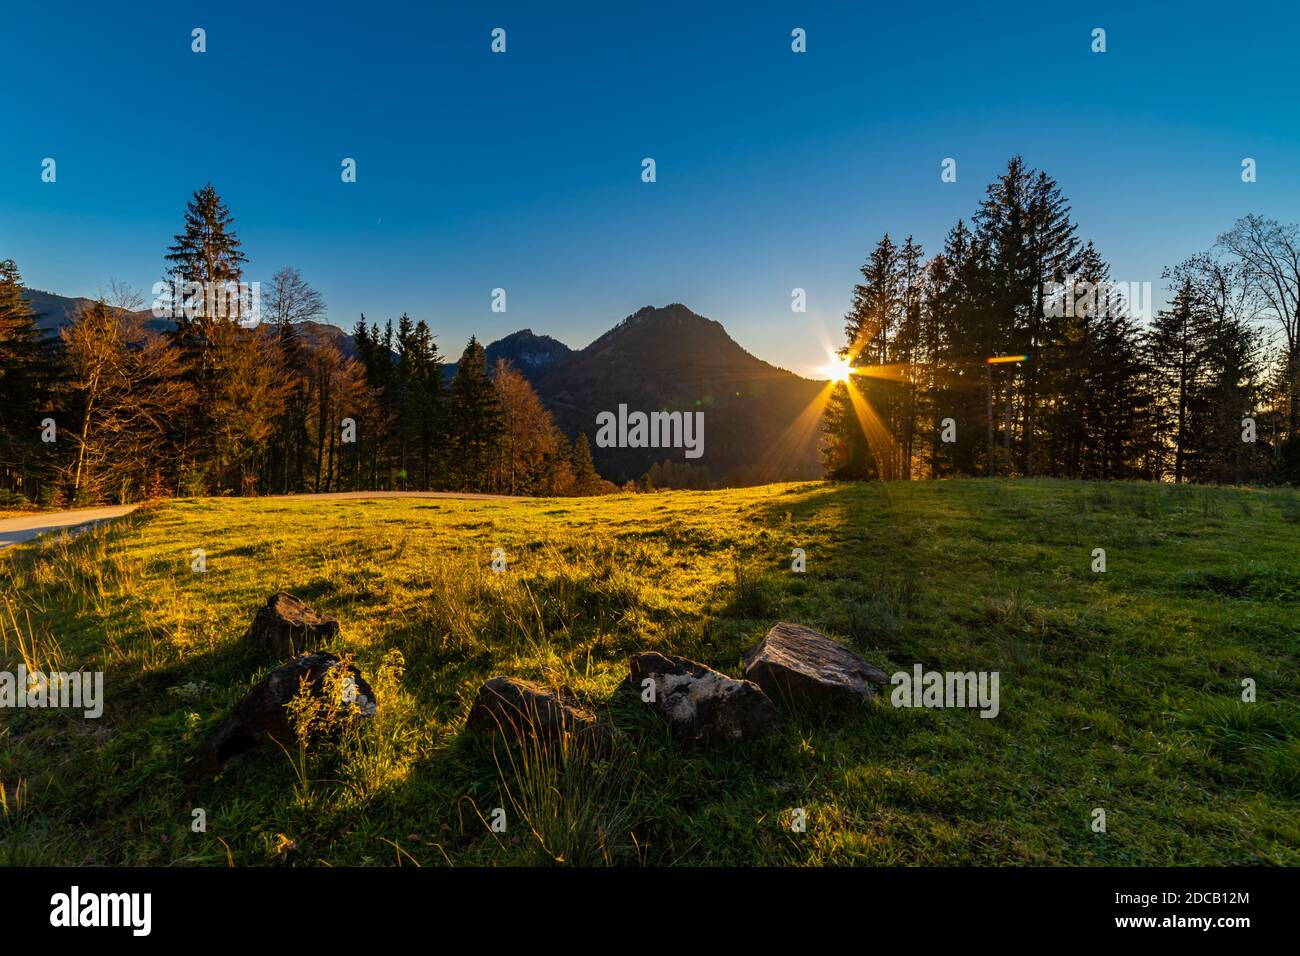 Die Abendsonne leuchtet als Stern durch die Baumkrone über dem Rheintal. zwei Bäume stehen allein auf dem Hügel und bilden eine Krone. Spotlight Stern Stock Photo